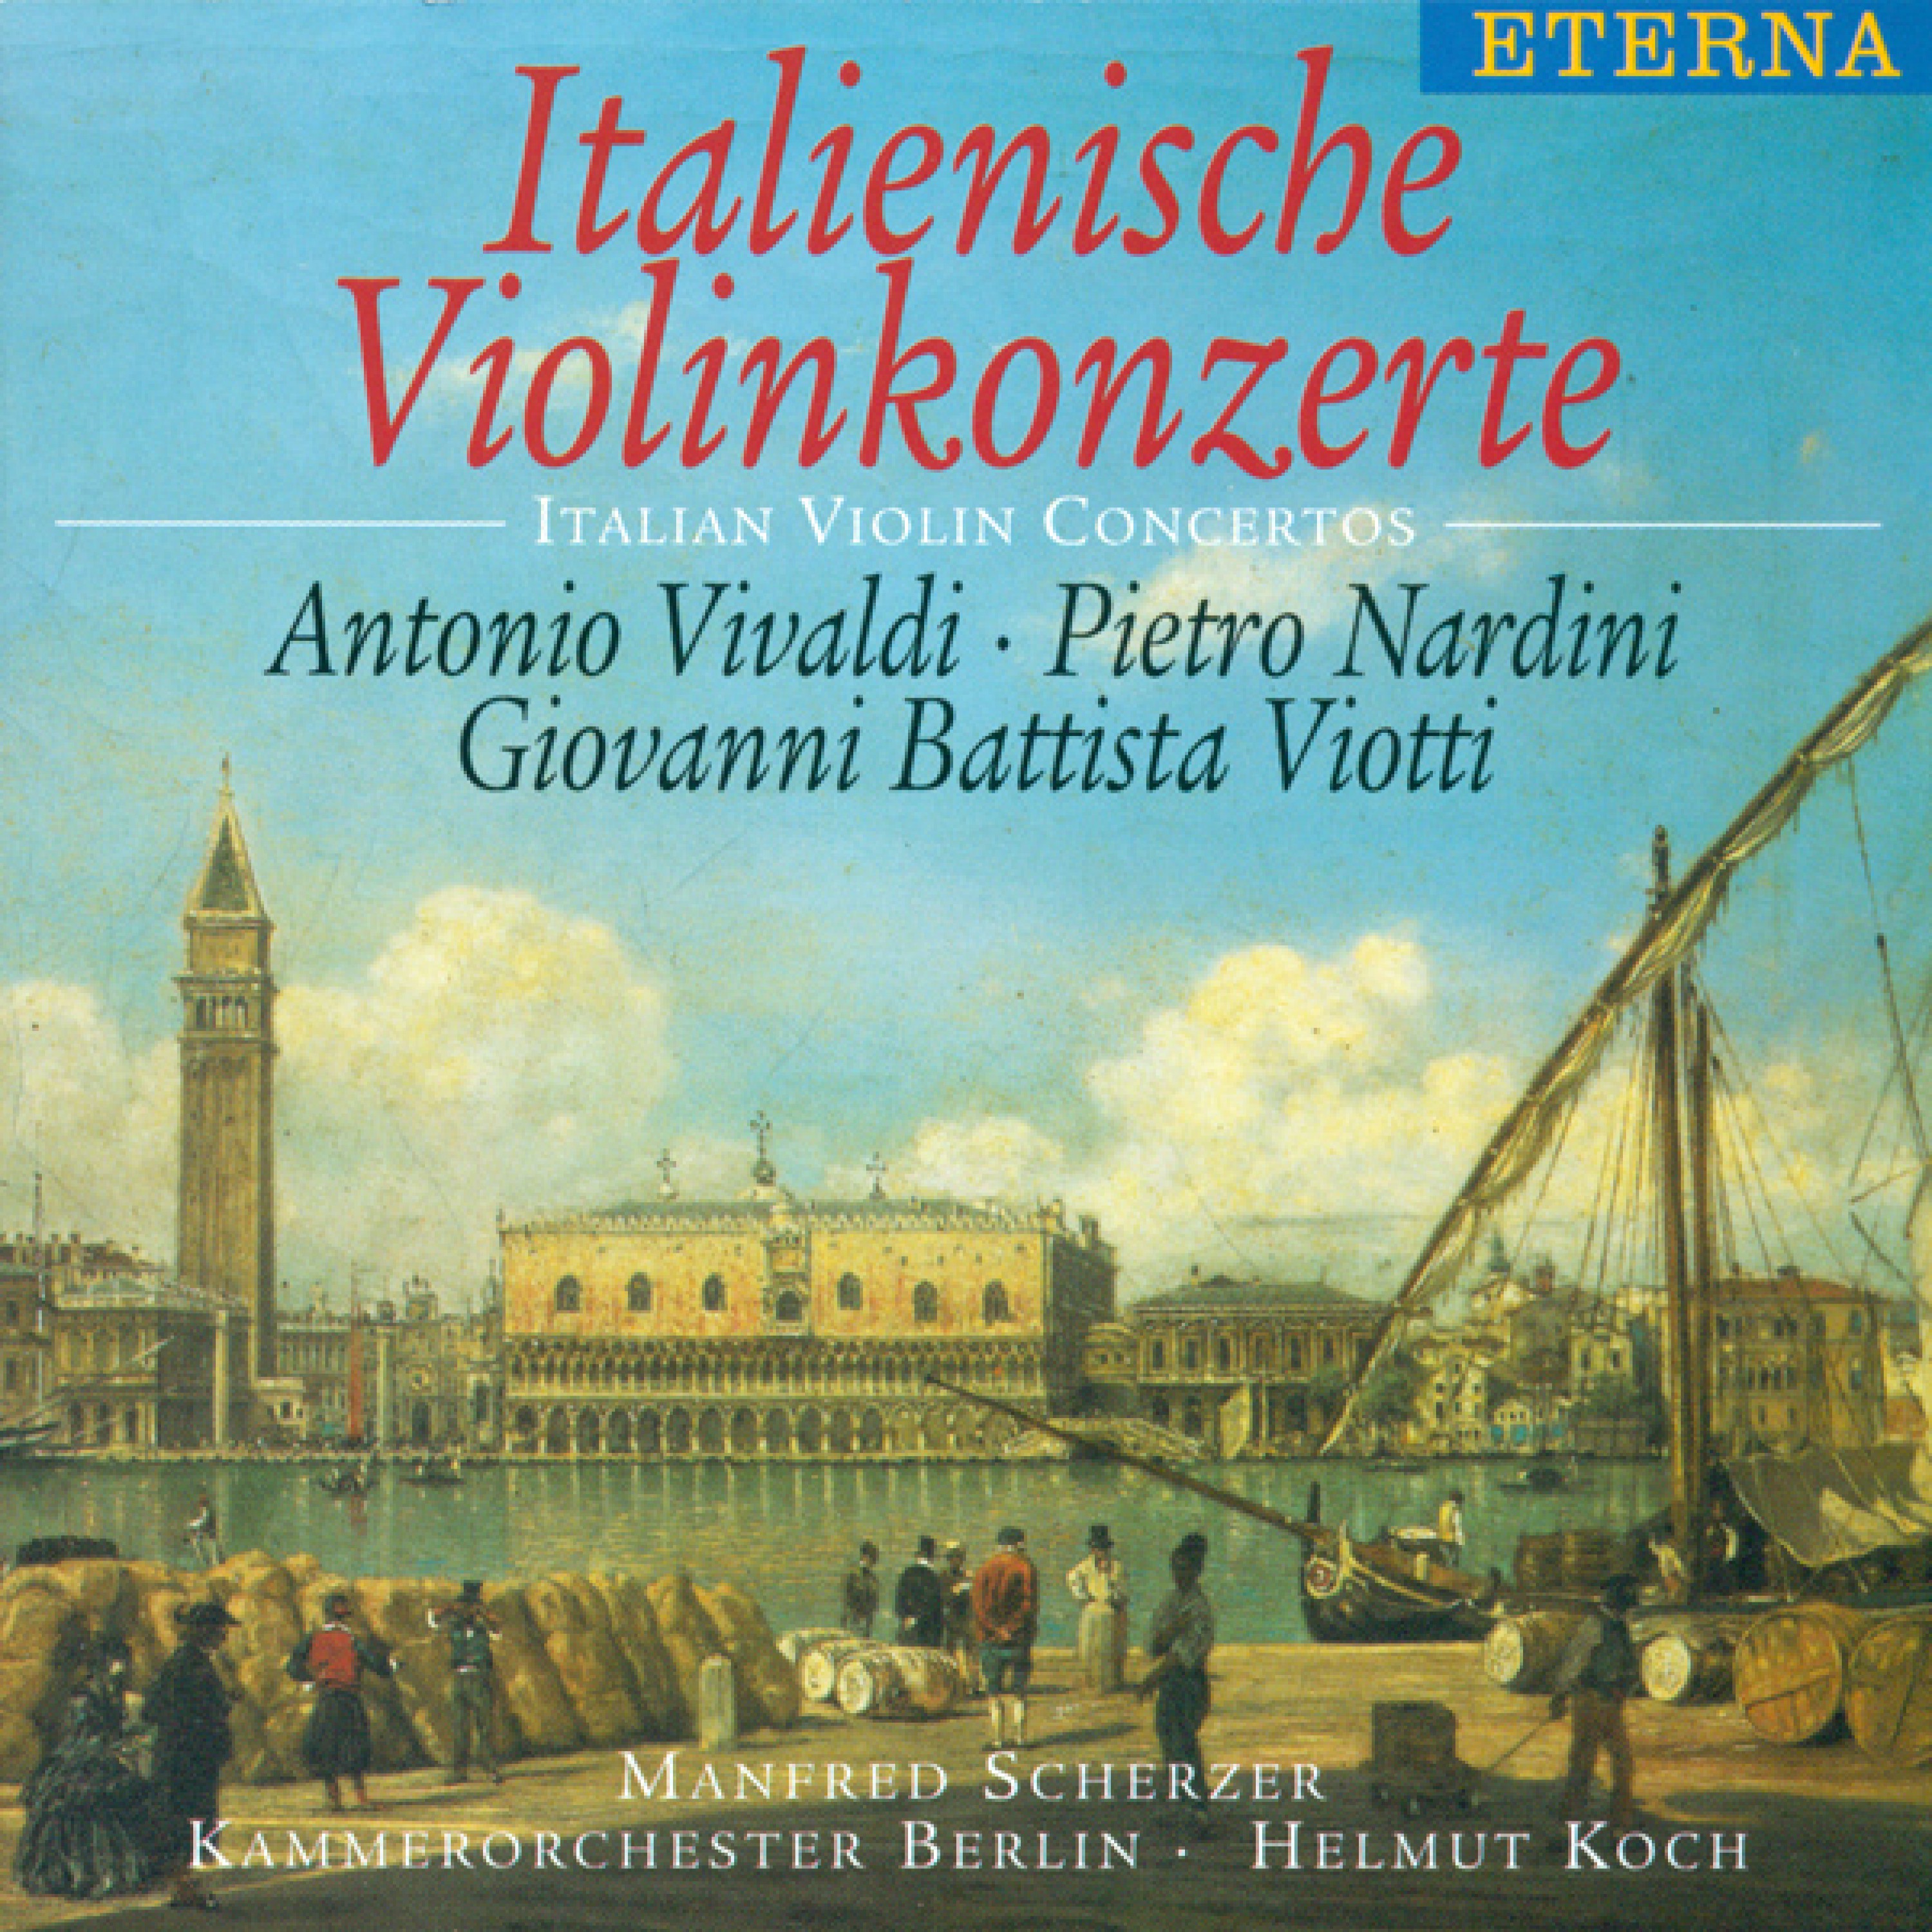 Violin Concerto No. 22 in A Minor, G. 97: III. Agitato assai